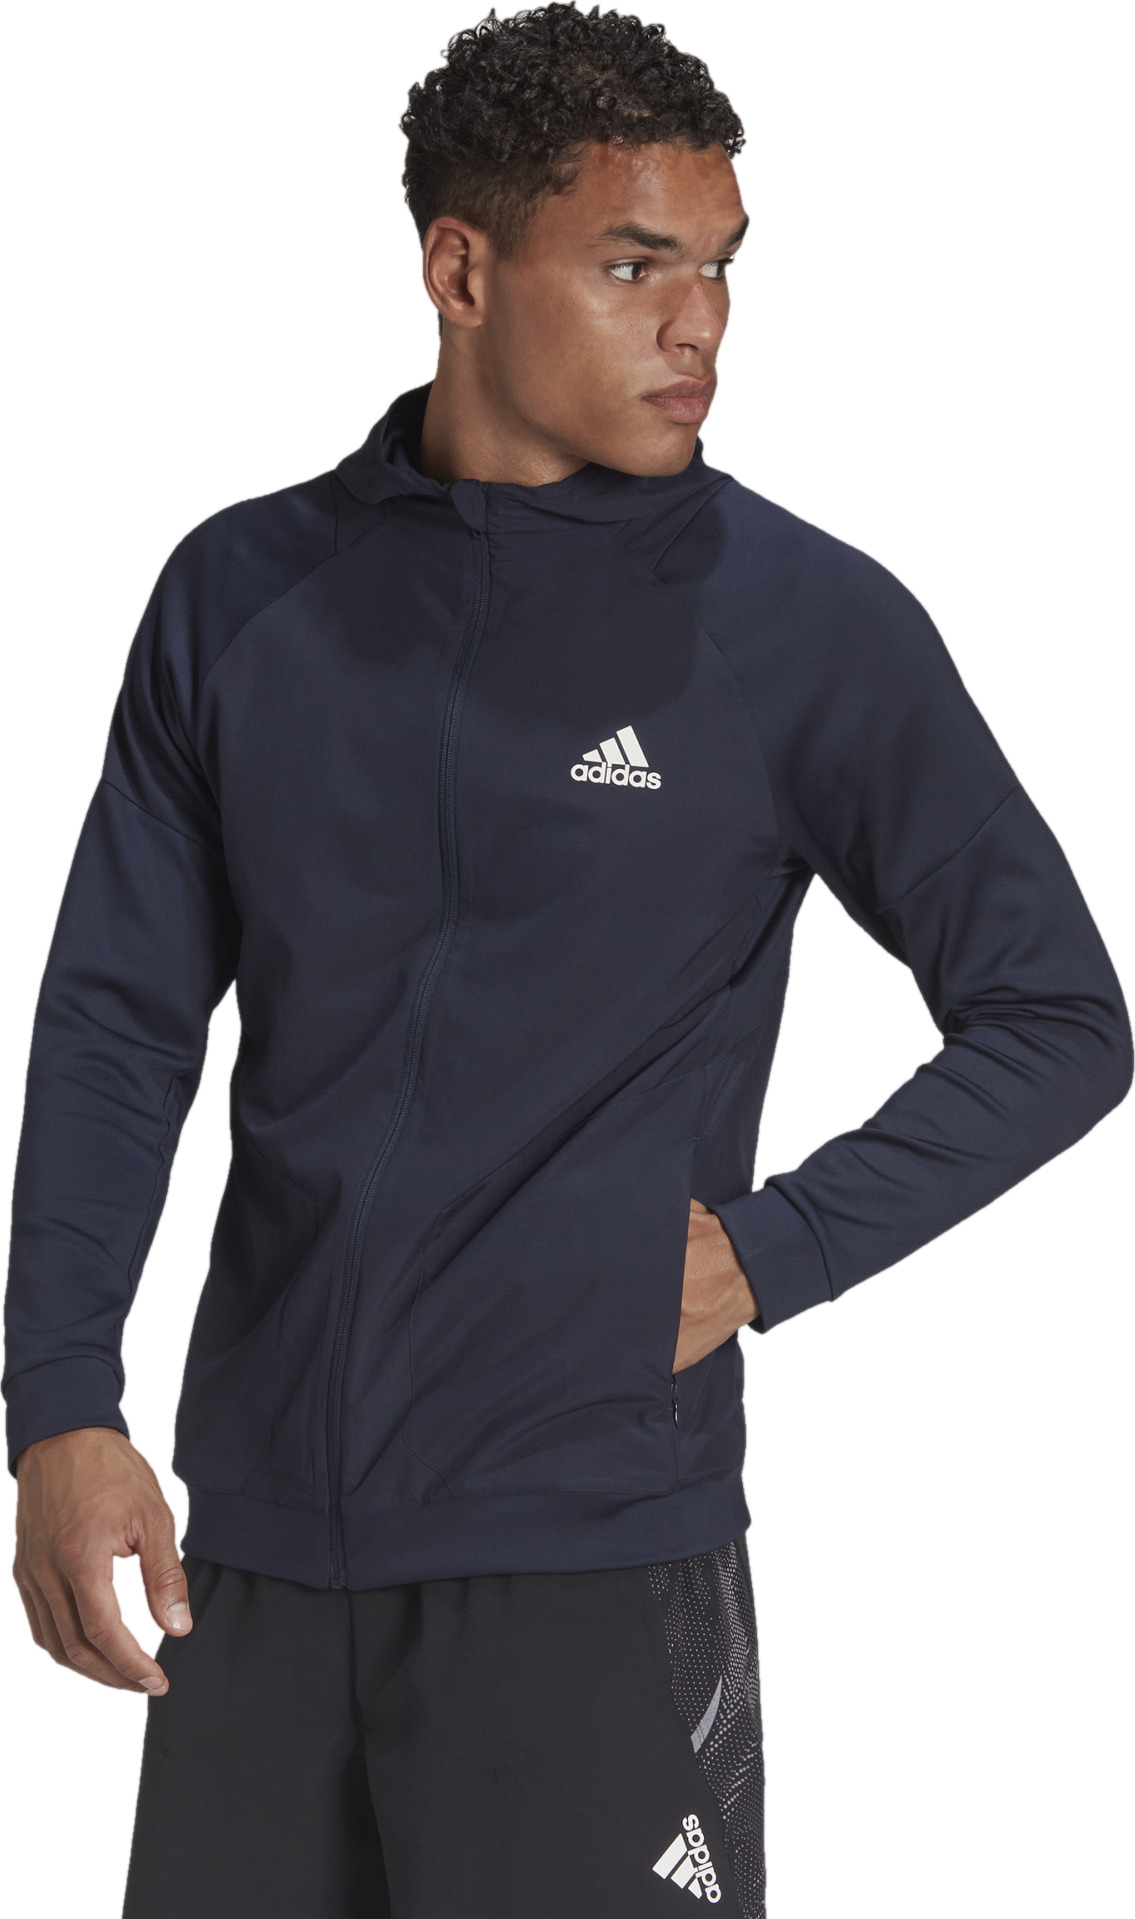 Олимпийка мужская M TRAIN FZ синяя XL Adidas. Цвет: синий